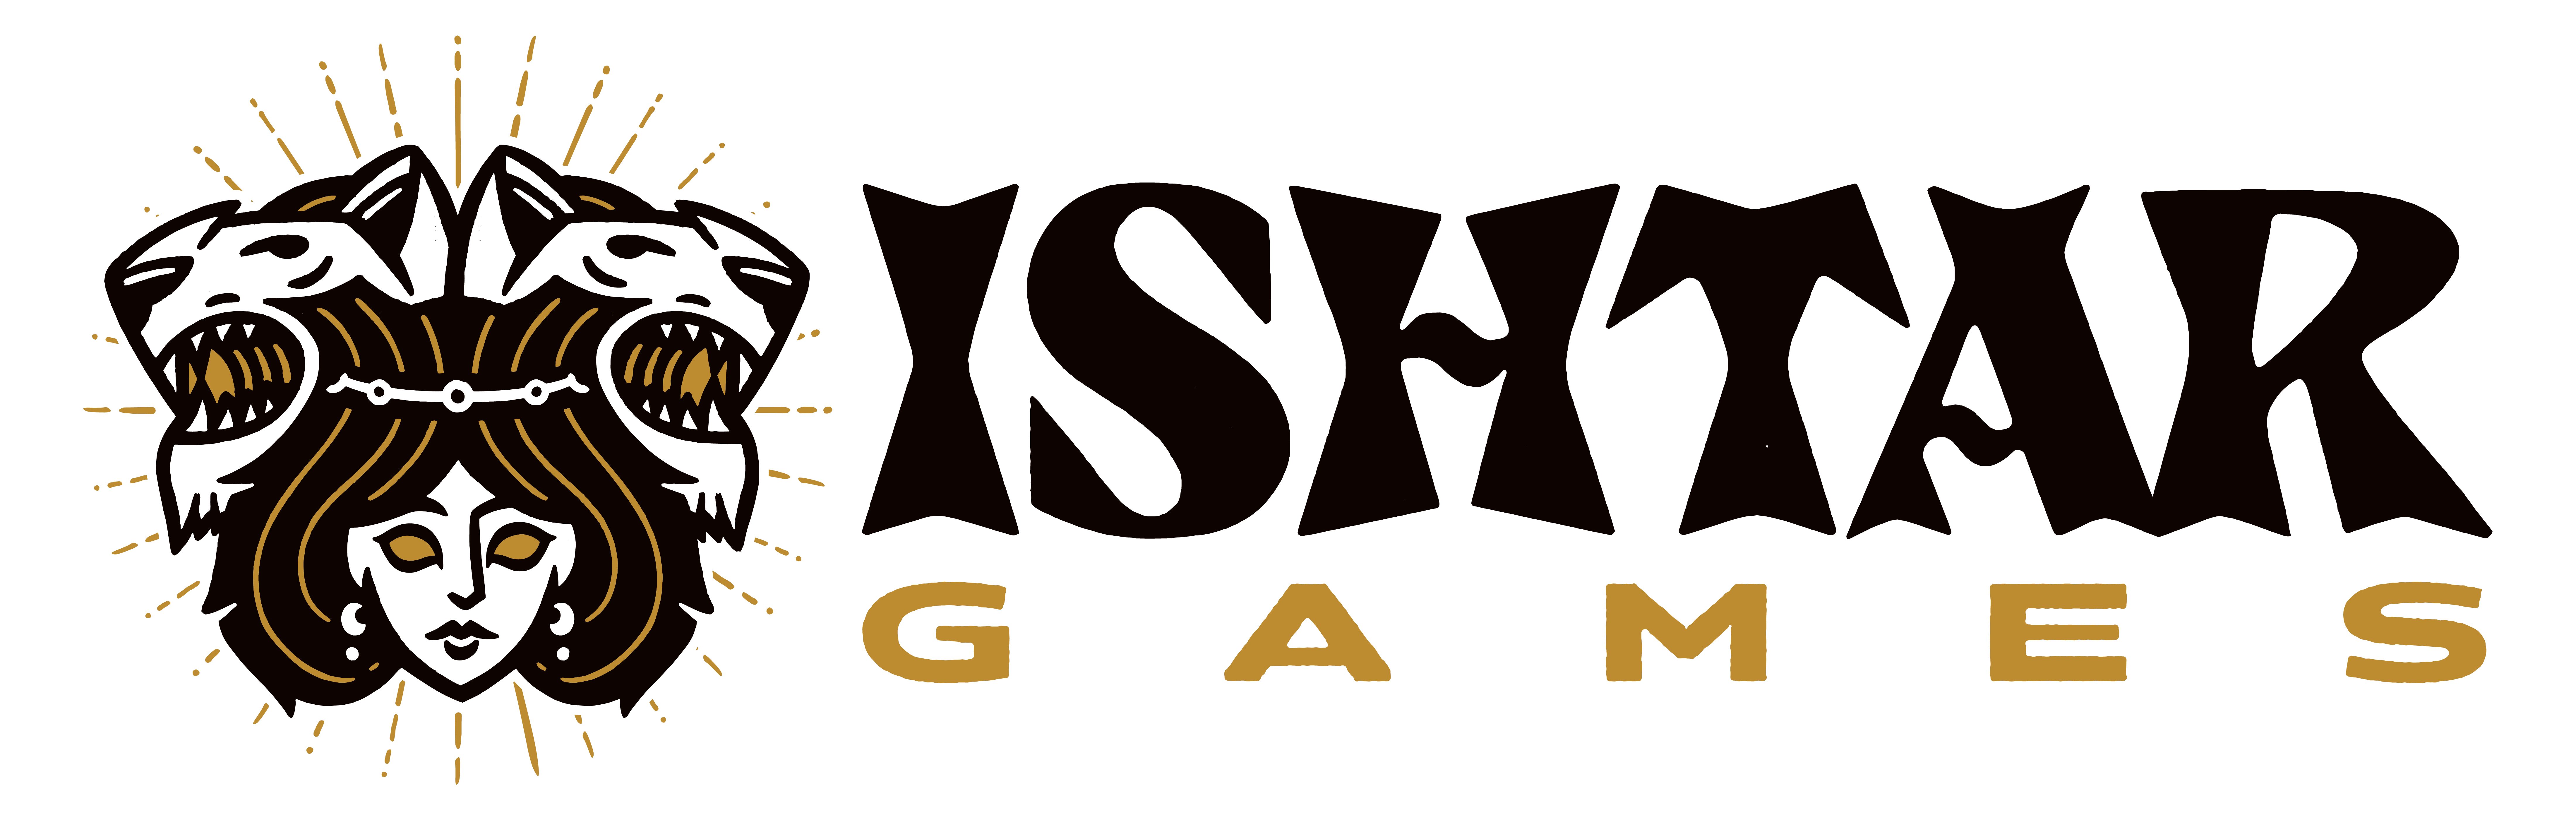 The Last Spell - Logo 1 [logo2 Ishtar.png]